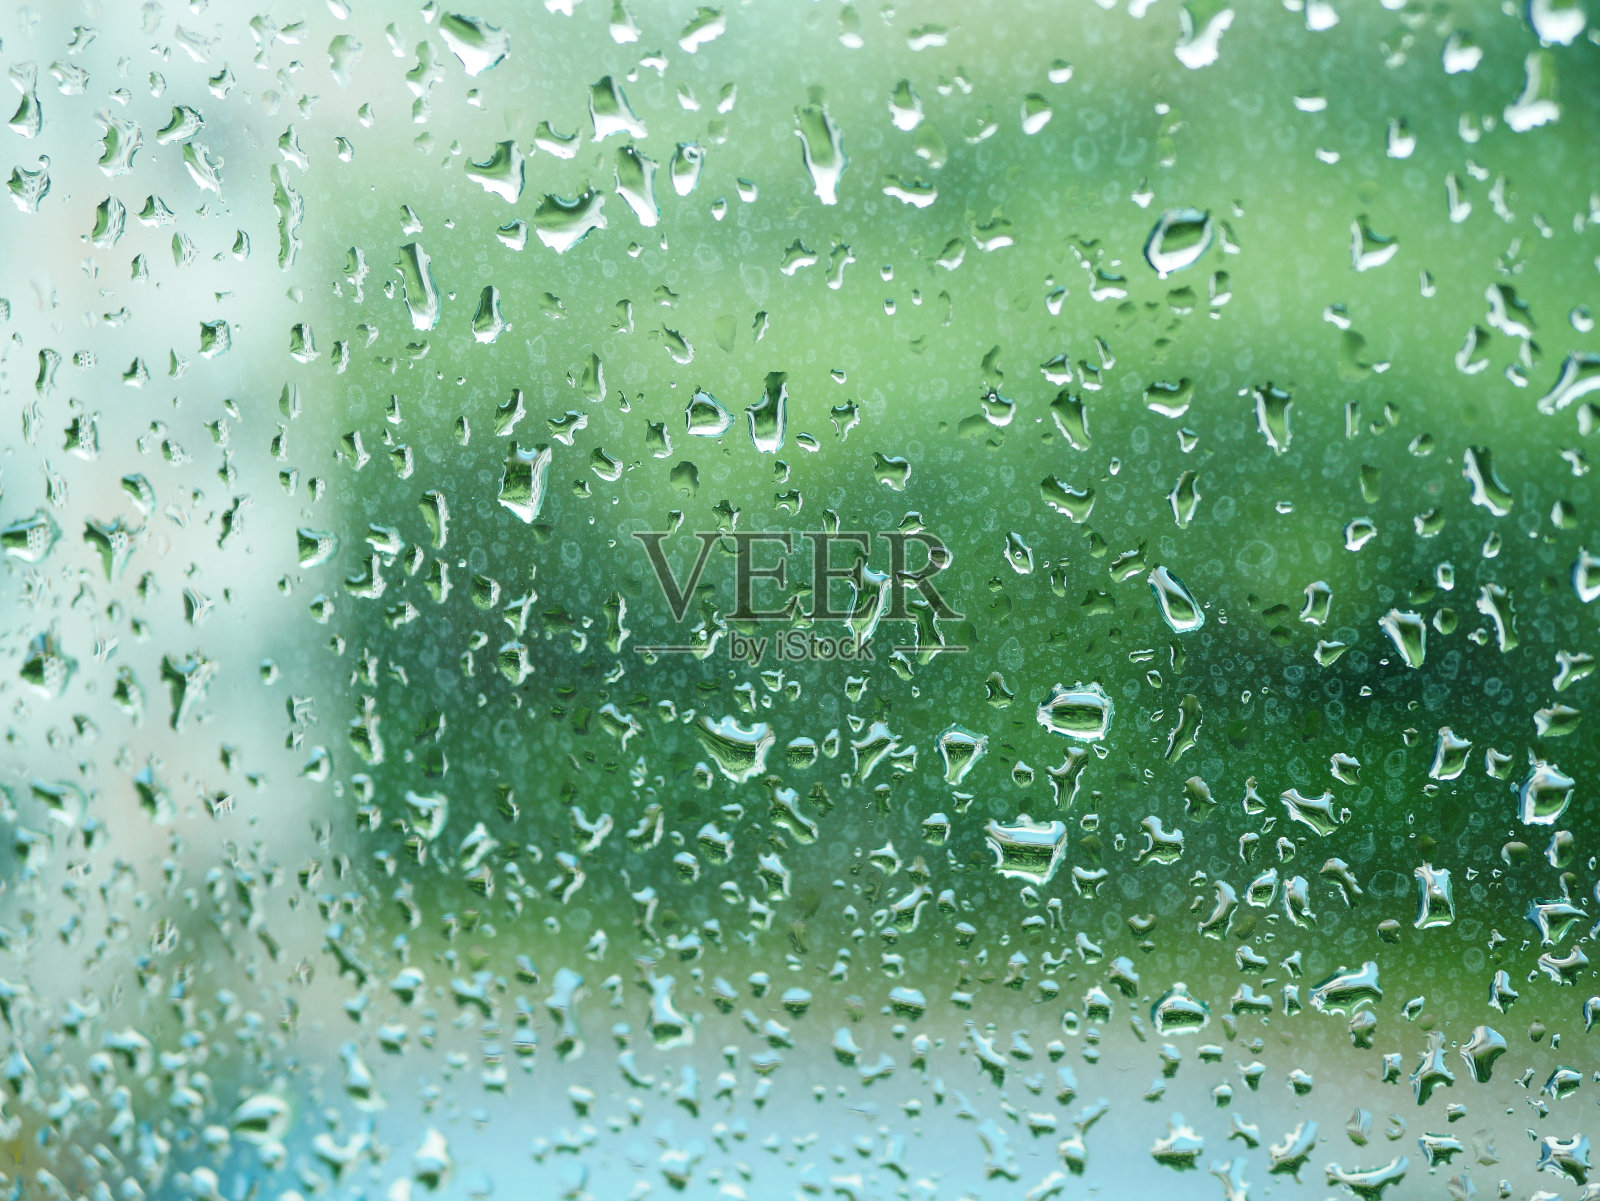 雨滴落在玻璃上的特写照片摄影图片